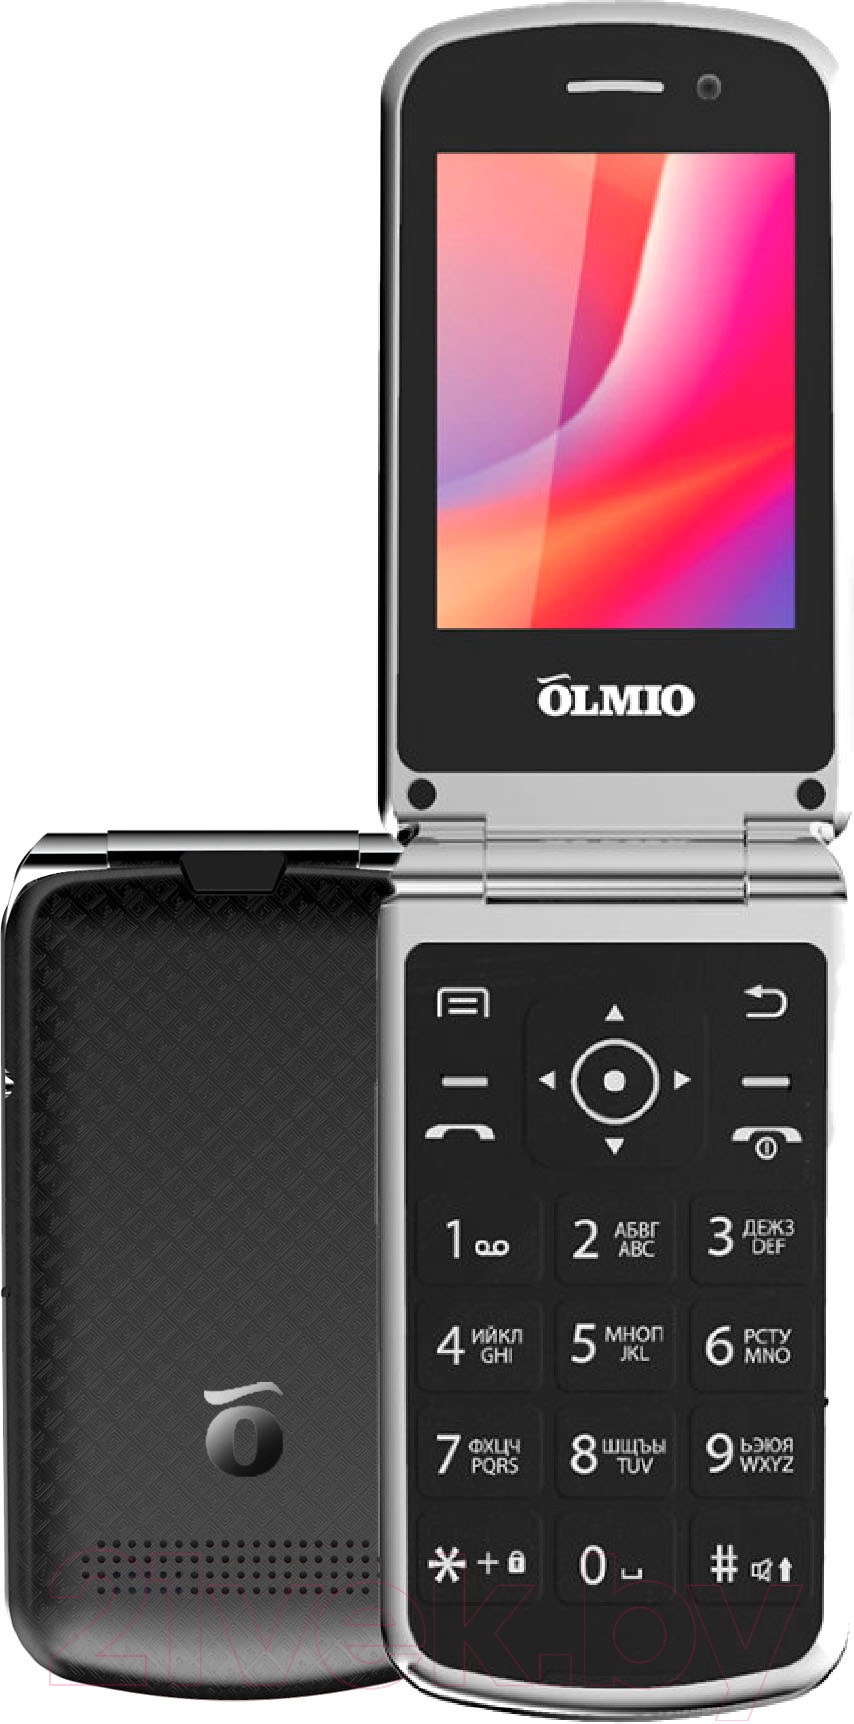 Мобильный телефон Olmio F28